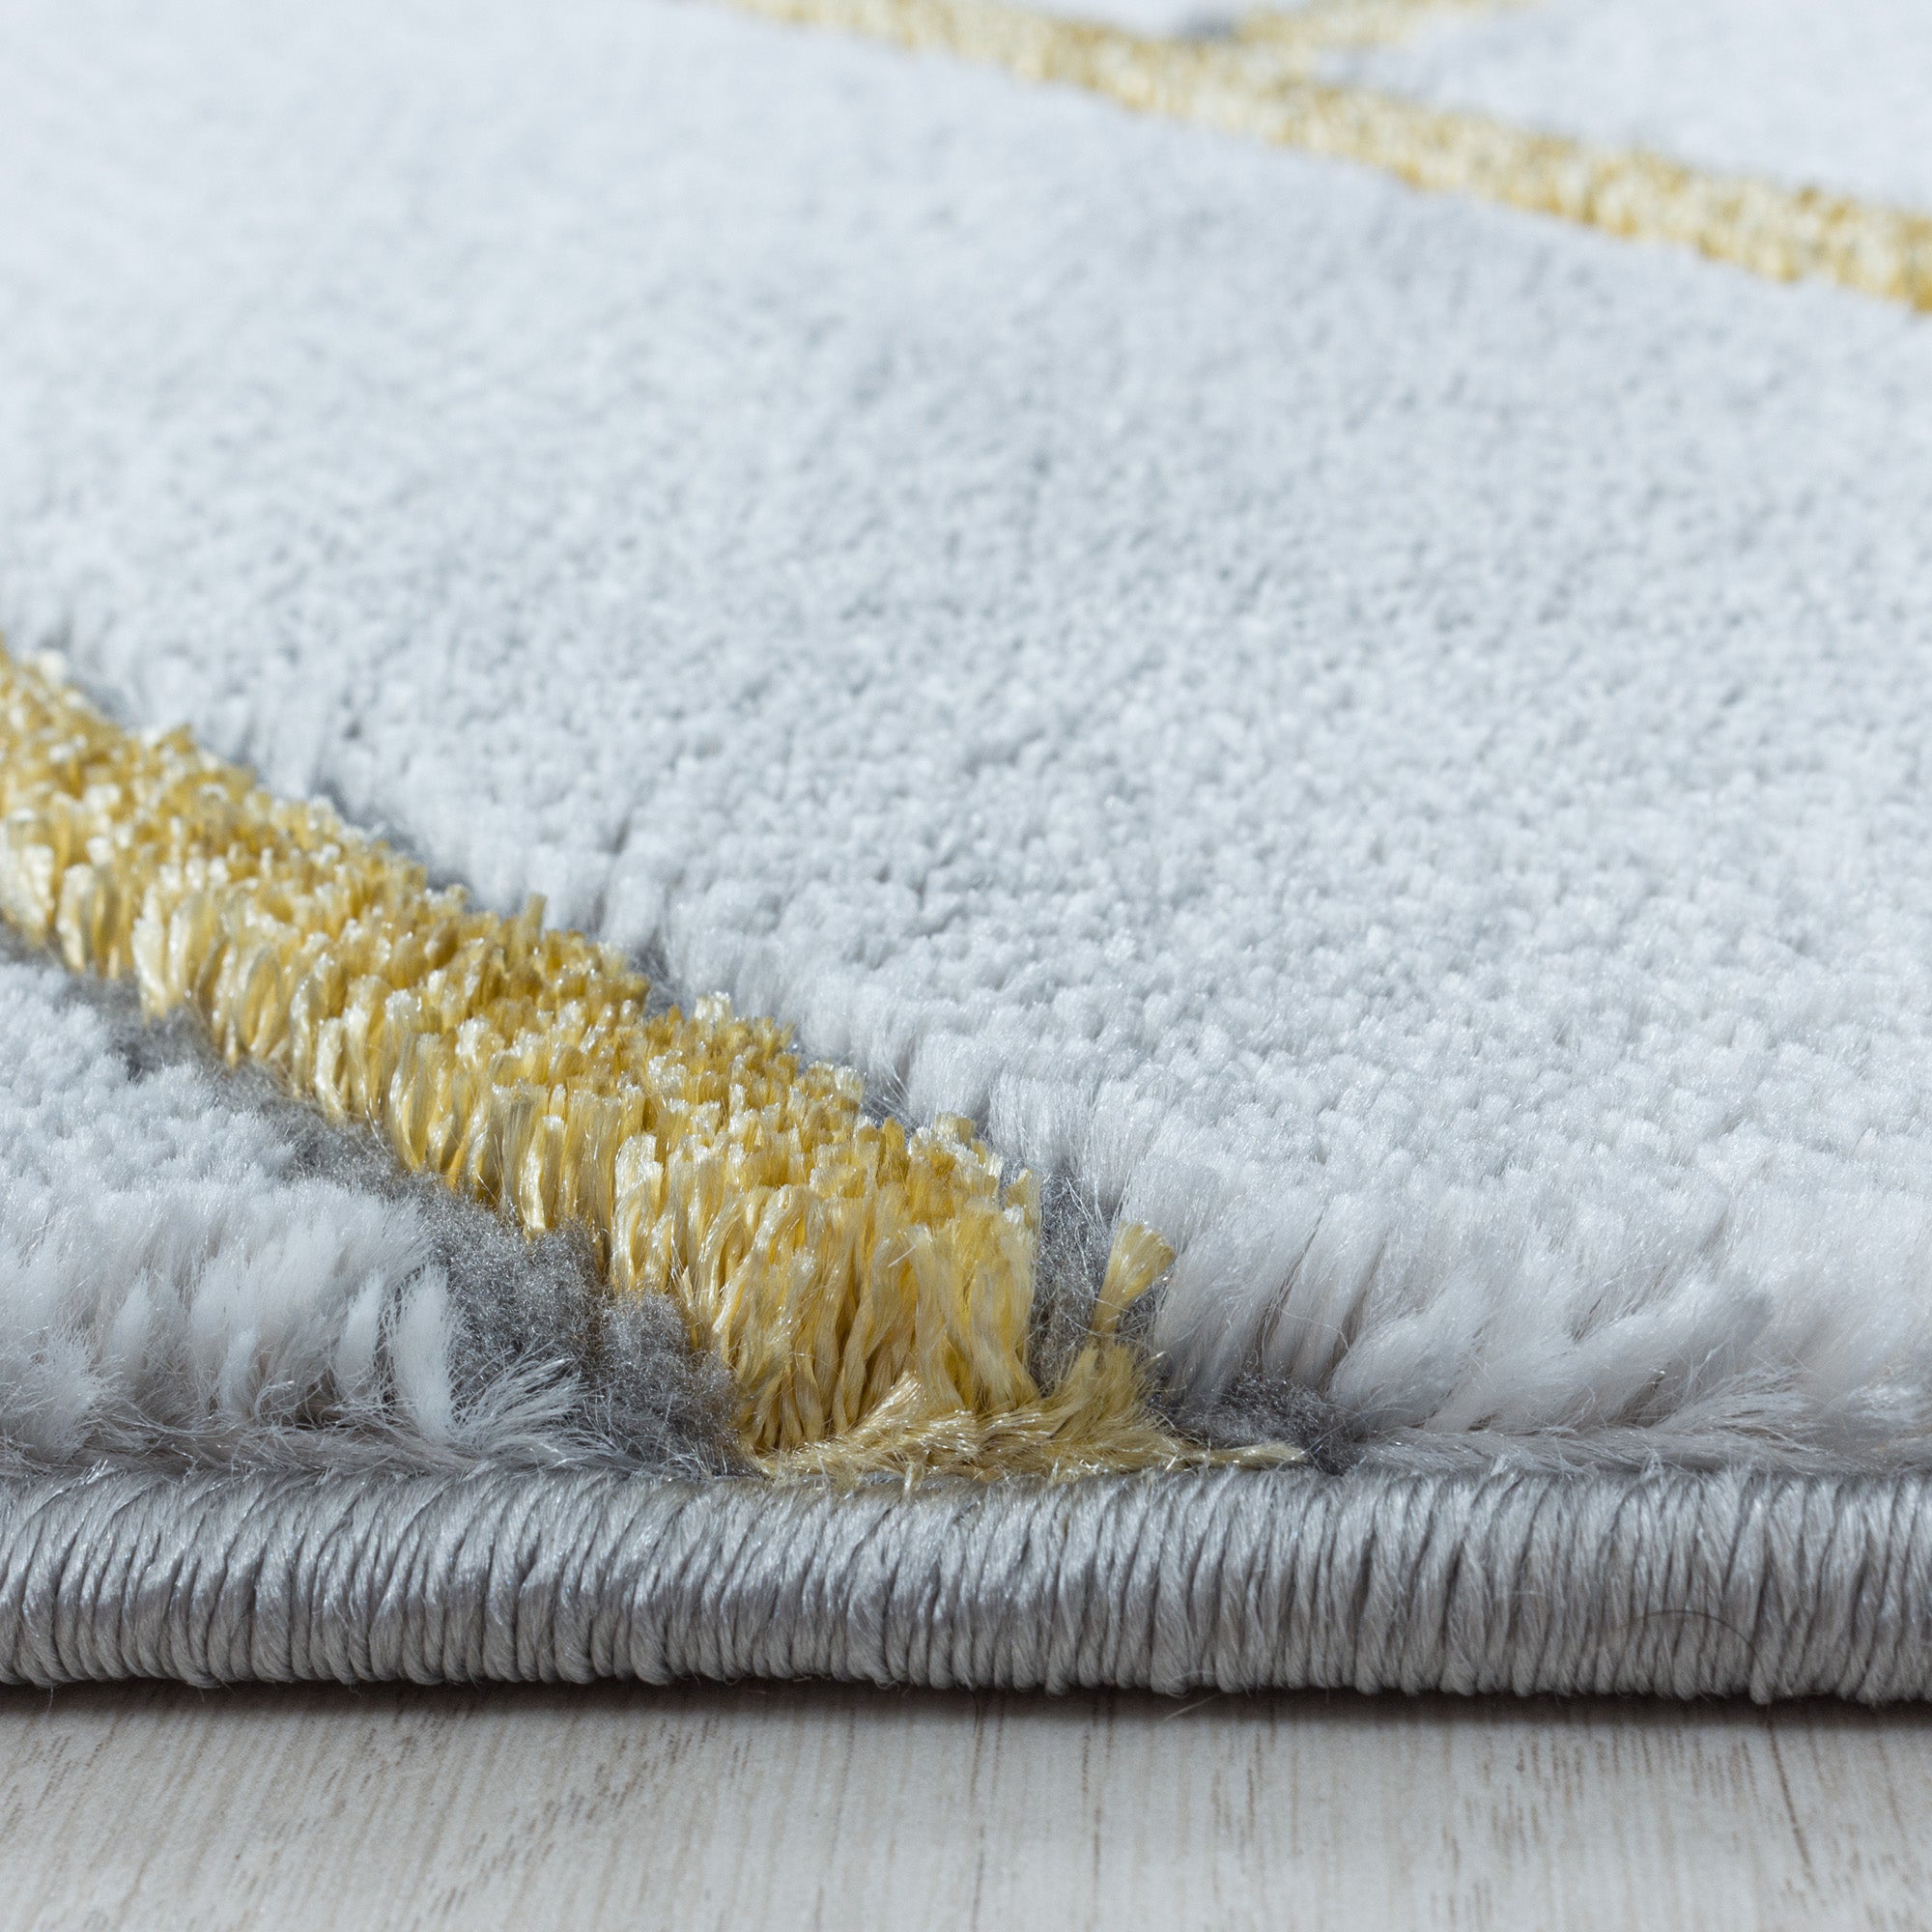 Kurzflor Design Teppich Wohnzimmerteppich Muster Marmoriert Linien Karo Gold